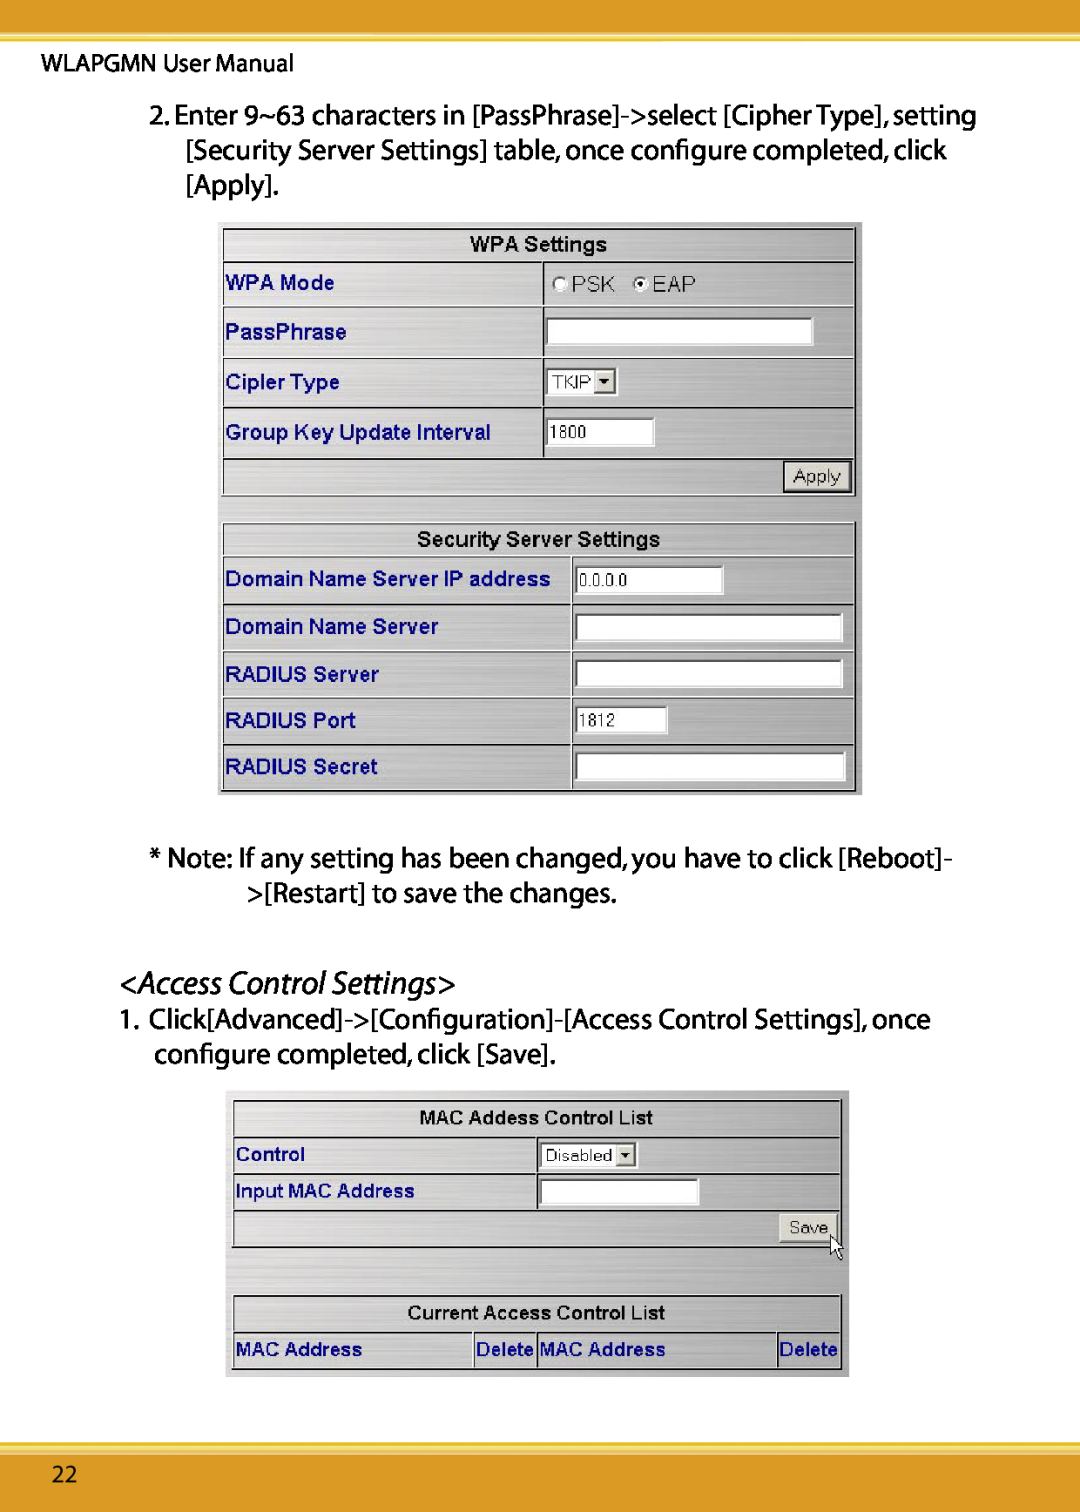 Corega CG-WLAPGMN user manual Access Control Settings, WLAPGMN User Manual 